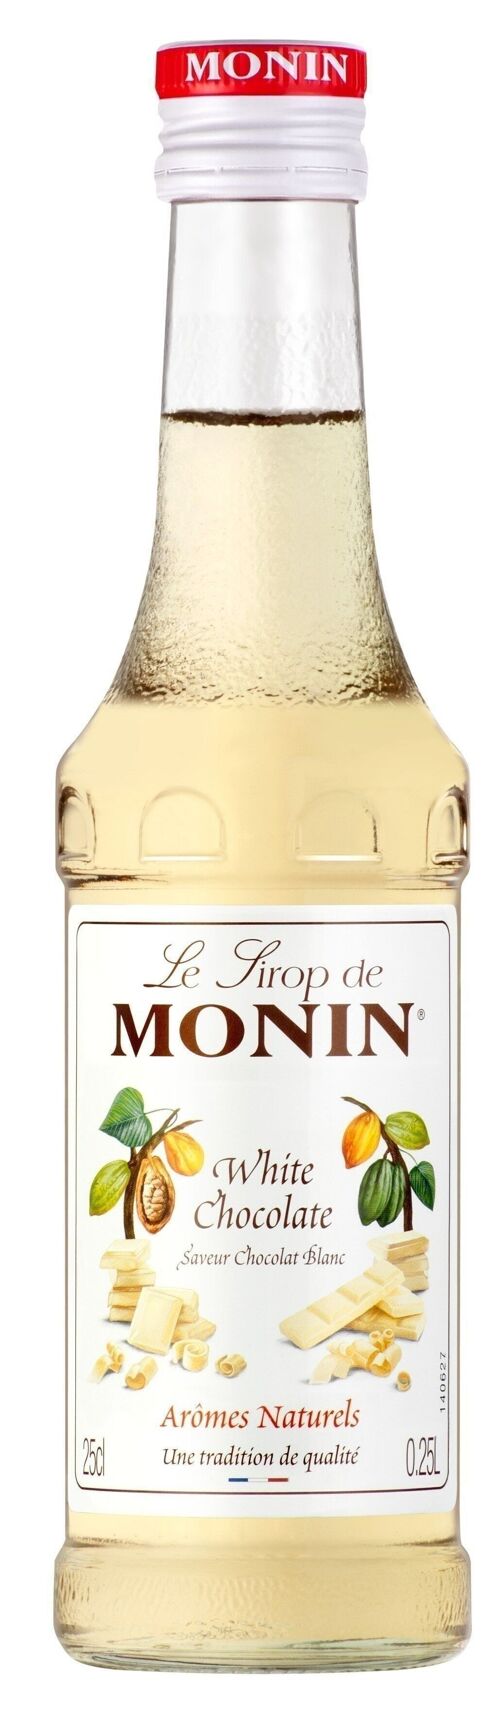 Sirop Saveur Chocolat Blanc MONIN pour aromatiser vos boissons chaudes ou desserts de la fête des mères - Arômes naturels - 25cl